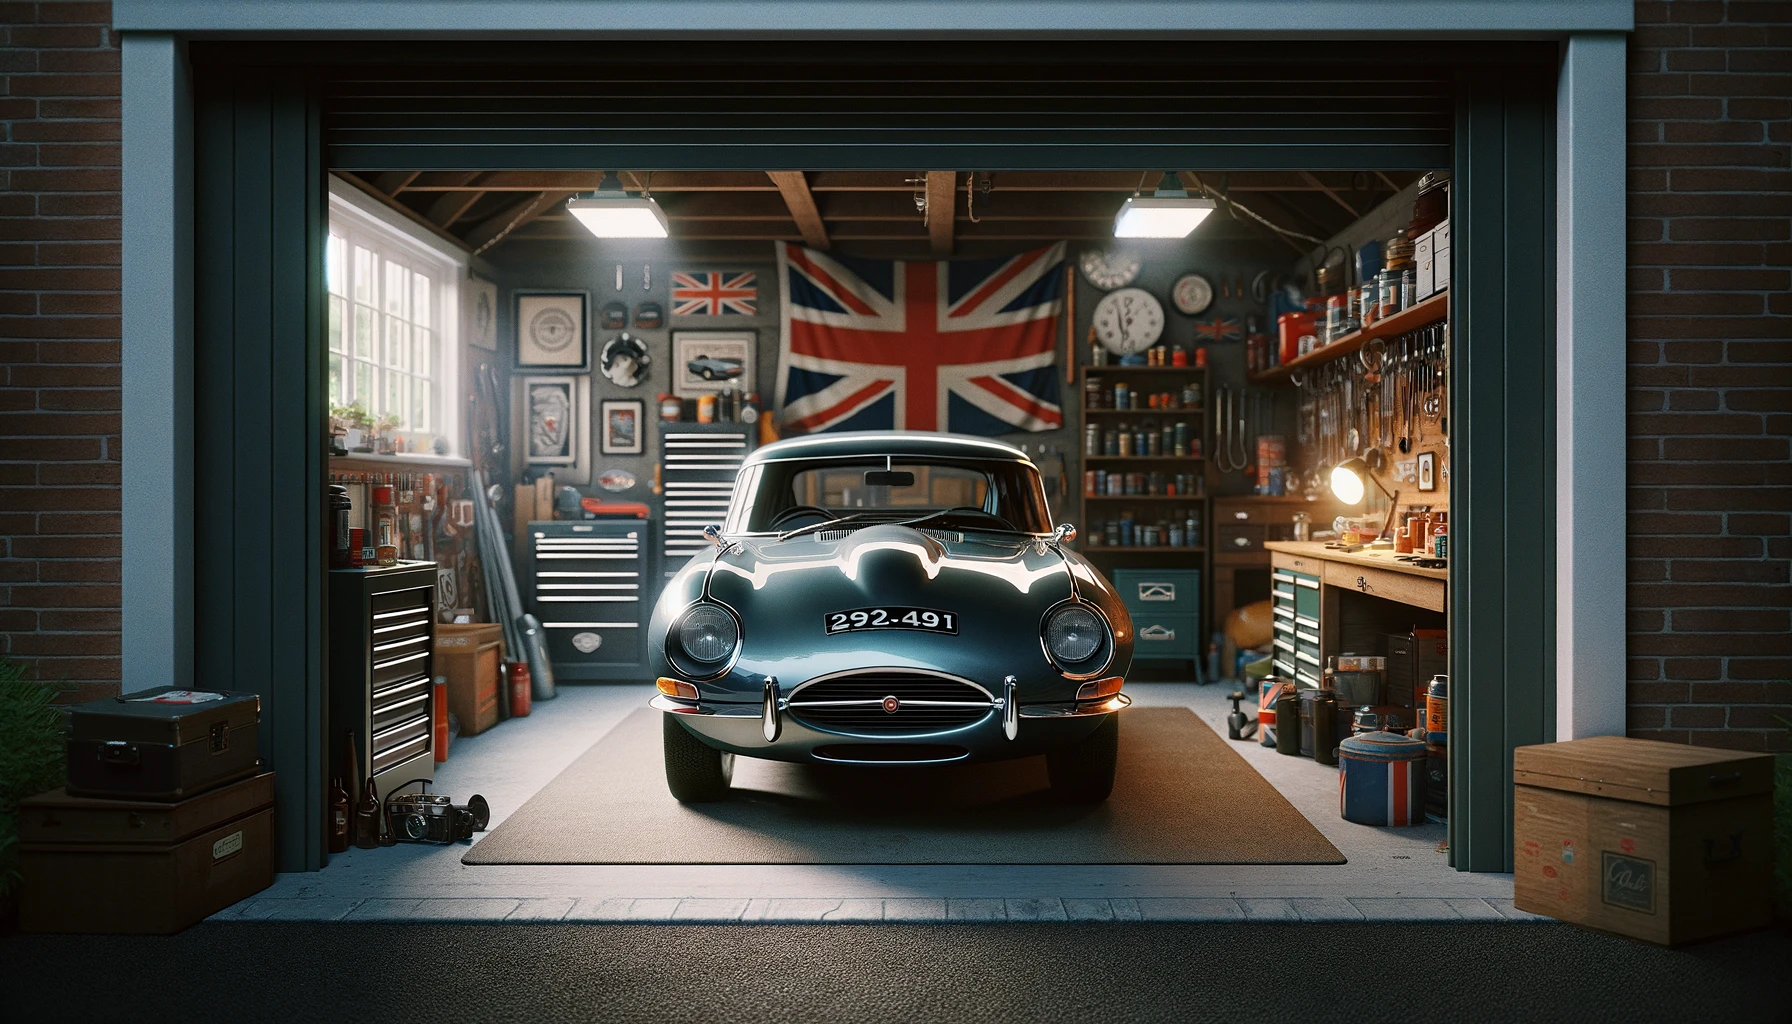 A classic car inside a secure garage.